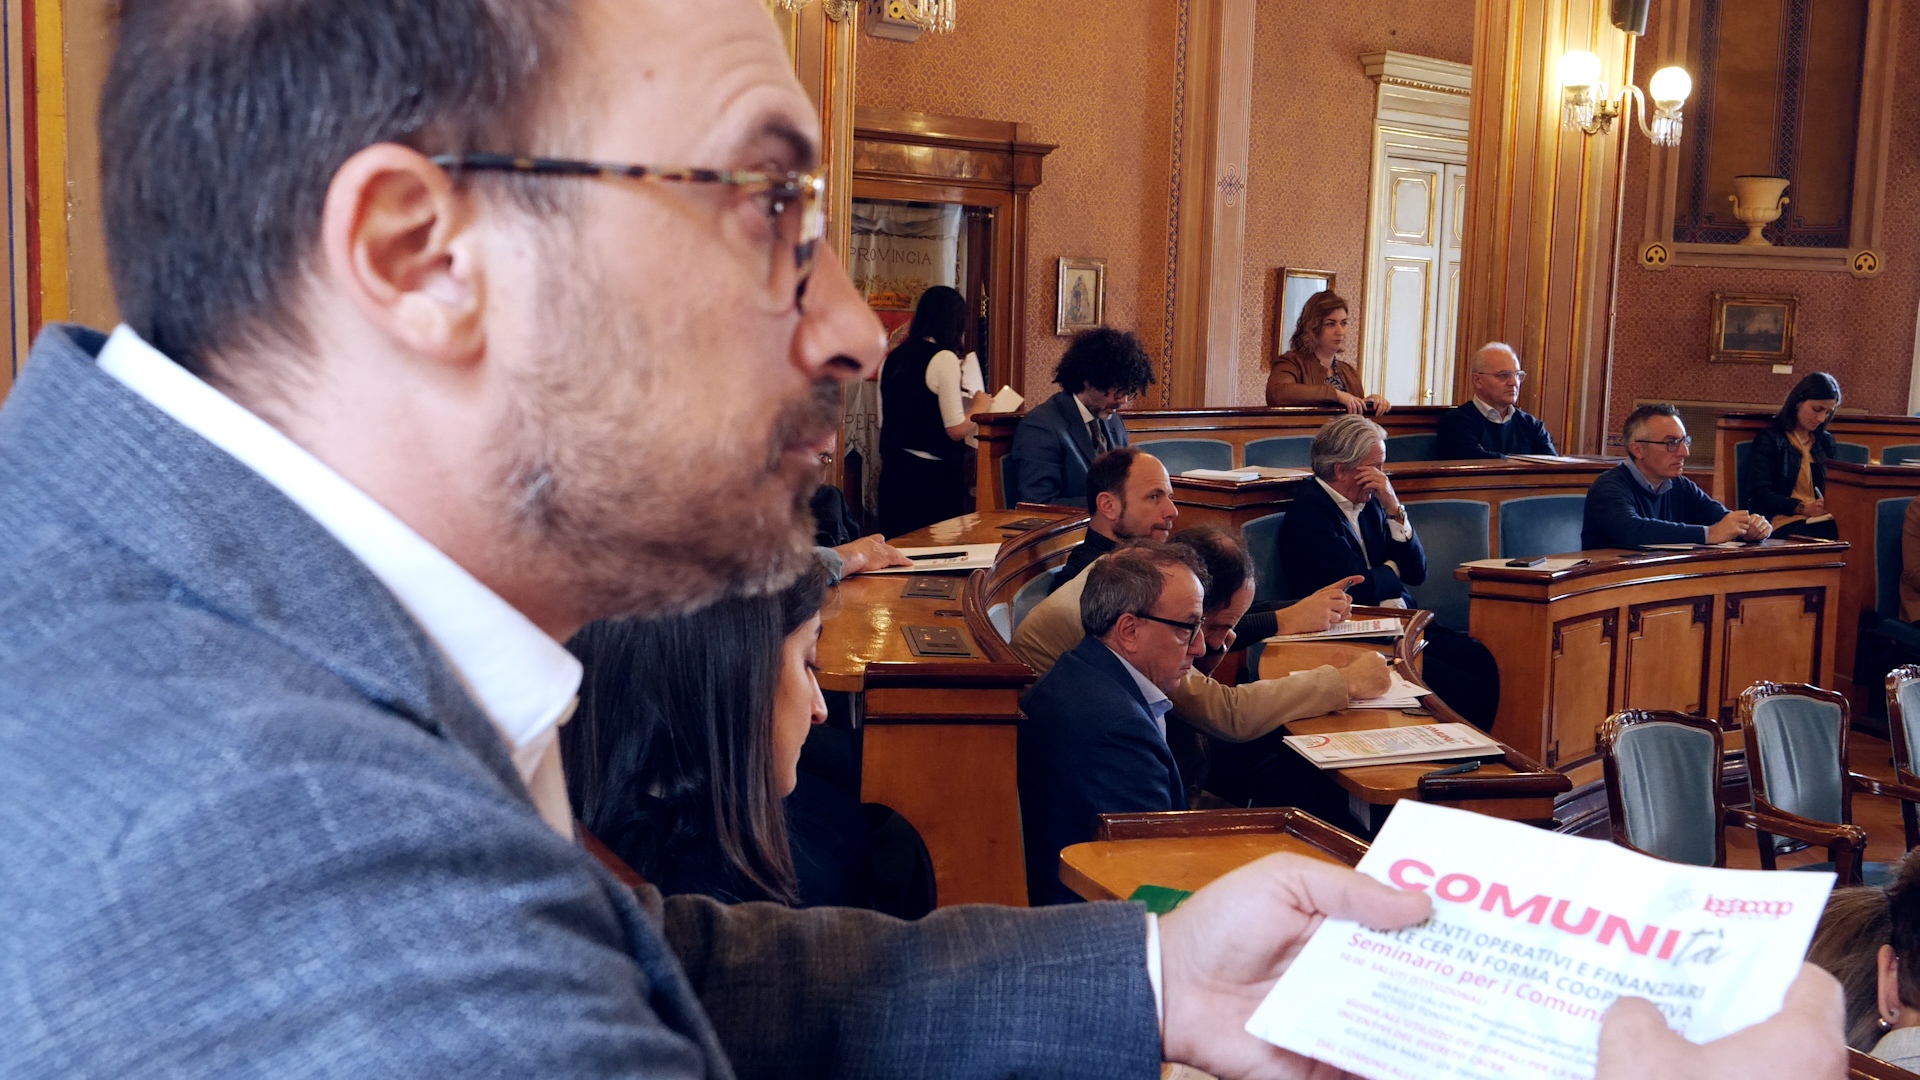 Legacoop promuove energia cooperativa: un seminario per attivare le CER nei comuni dell’Umbria